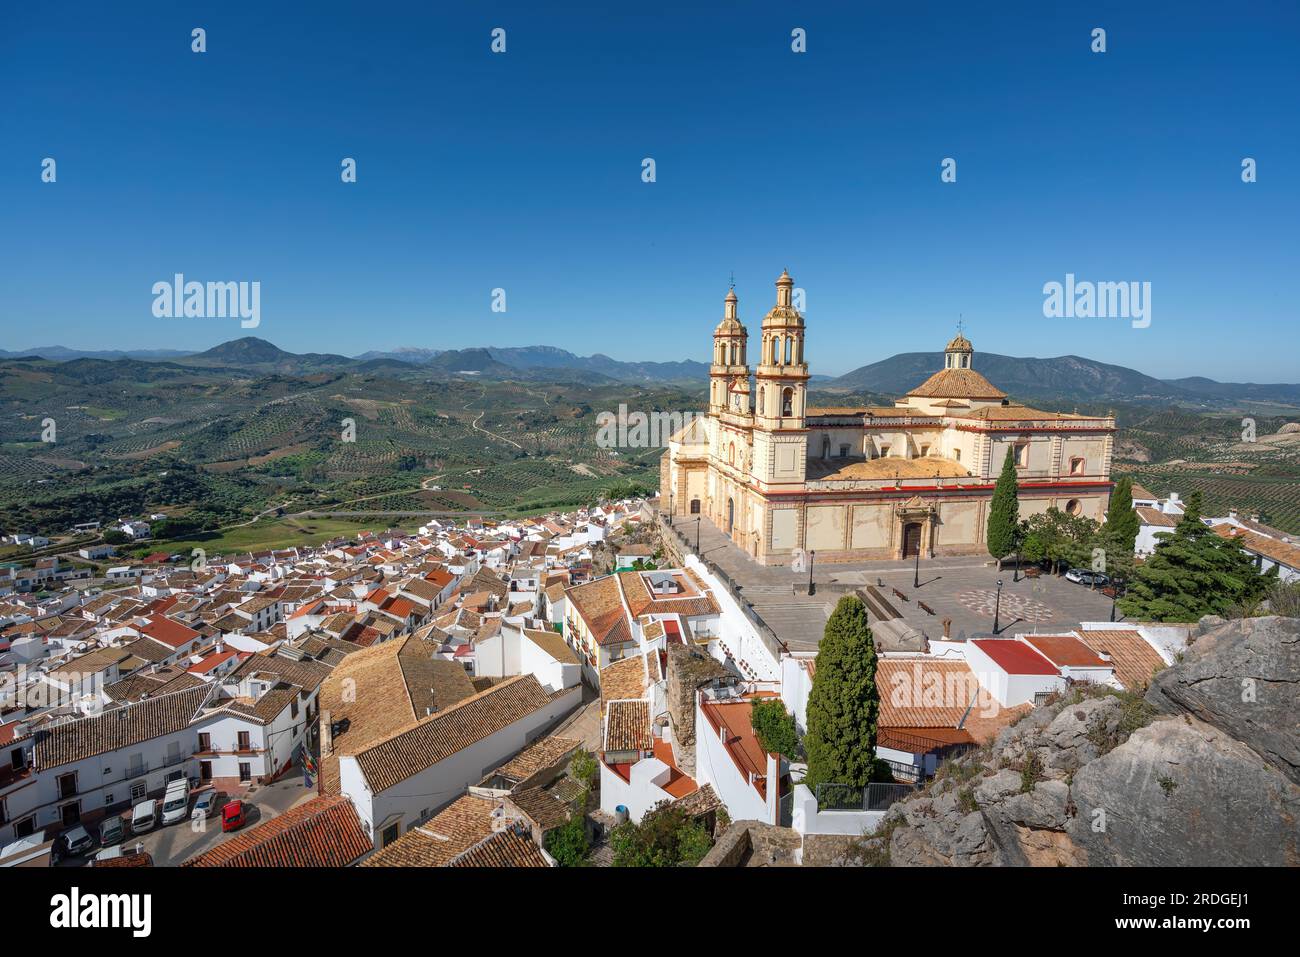 Vue aérienne d'Olvera avec l'église de Nuestra Senora de la Encarnacion - Olvera, Andalousie, Espagne Banque D'Images